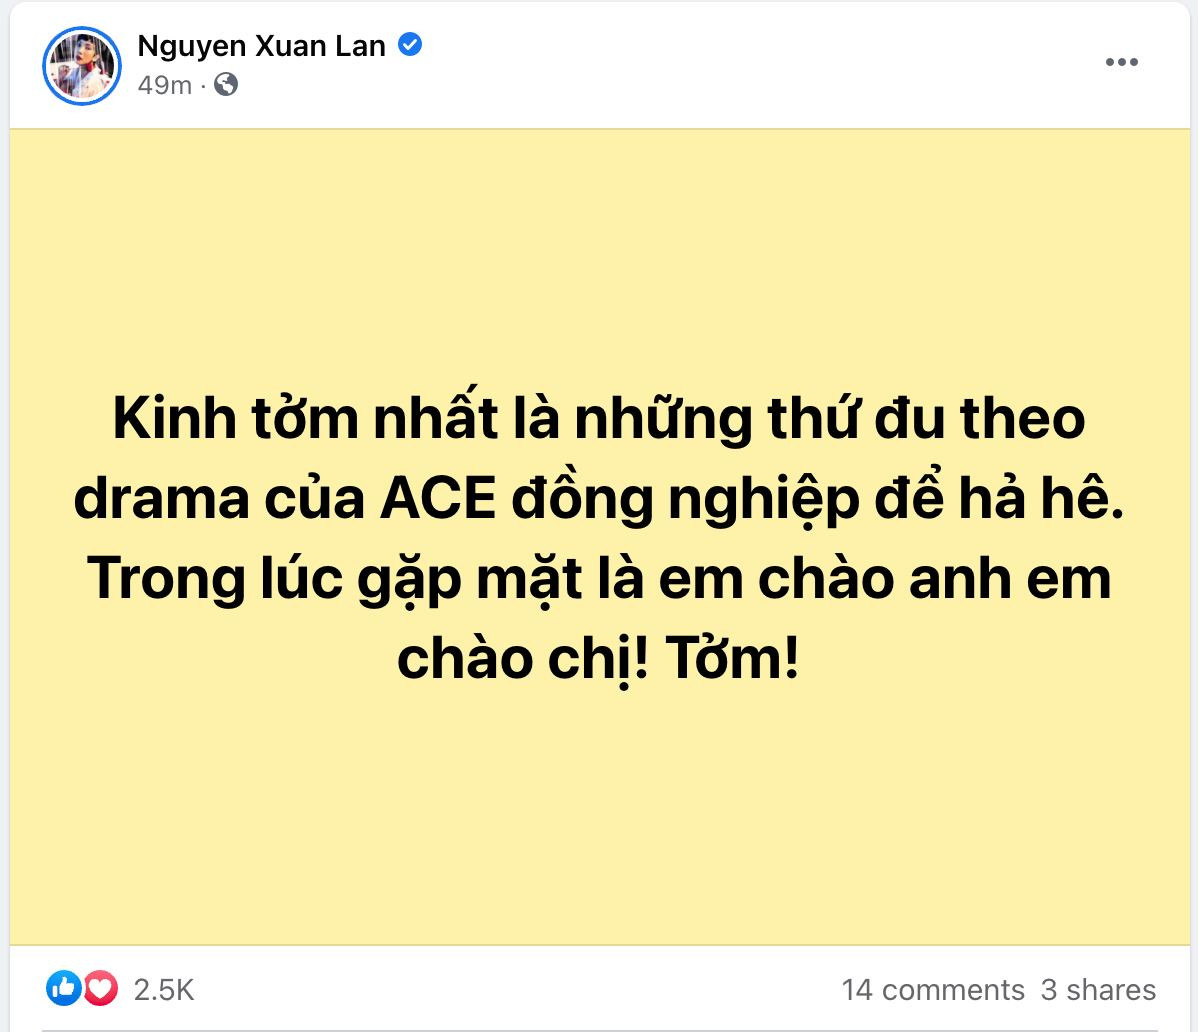 Phản ứng của loạt sao Việt trước phát ngôn của Xuân Lan: Kinh tởm nhất thứ đu drama để hả hê